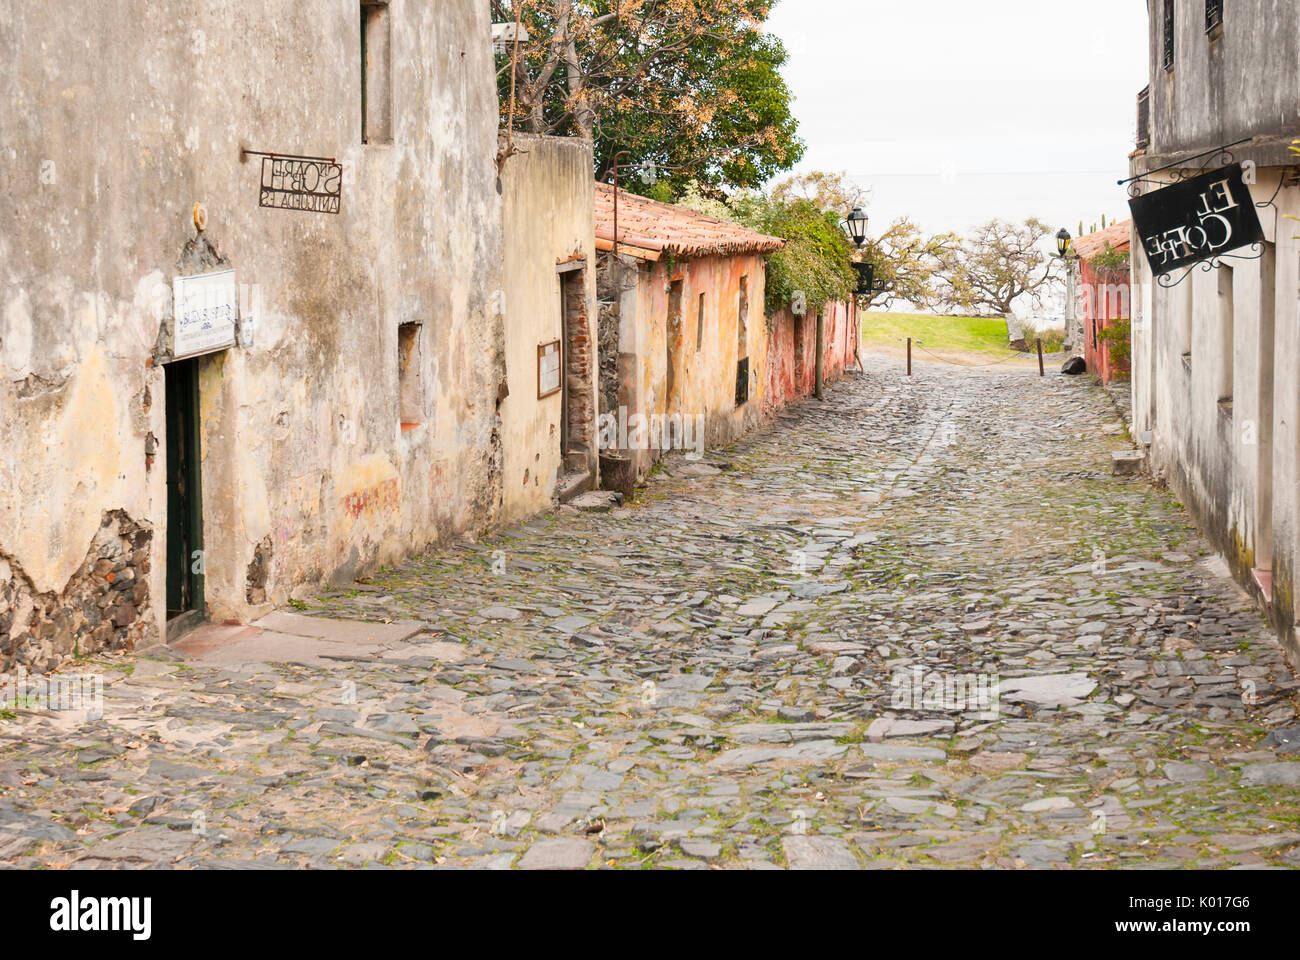 Die Calle de los suspiros (Straße der Seufzer) in Colonia del Sacramento, Uruguay. Weltkulturerbe der UNESCO Stockfoto